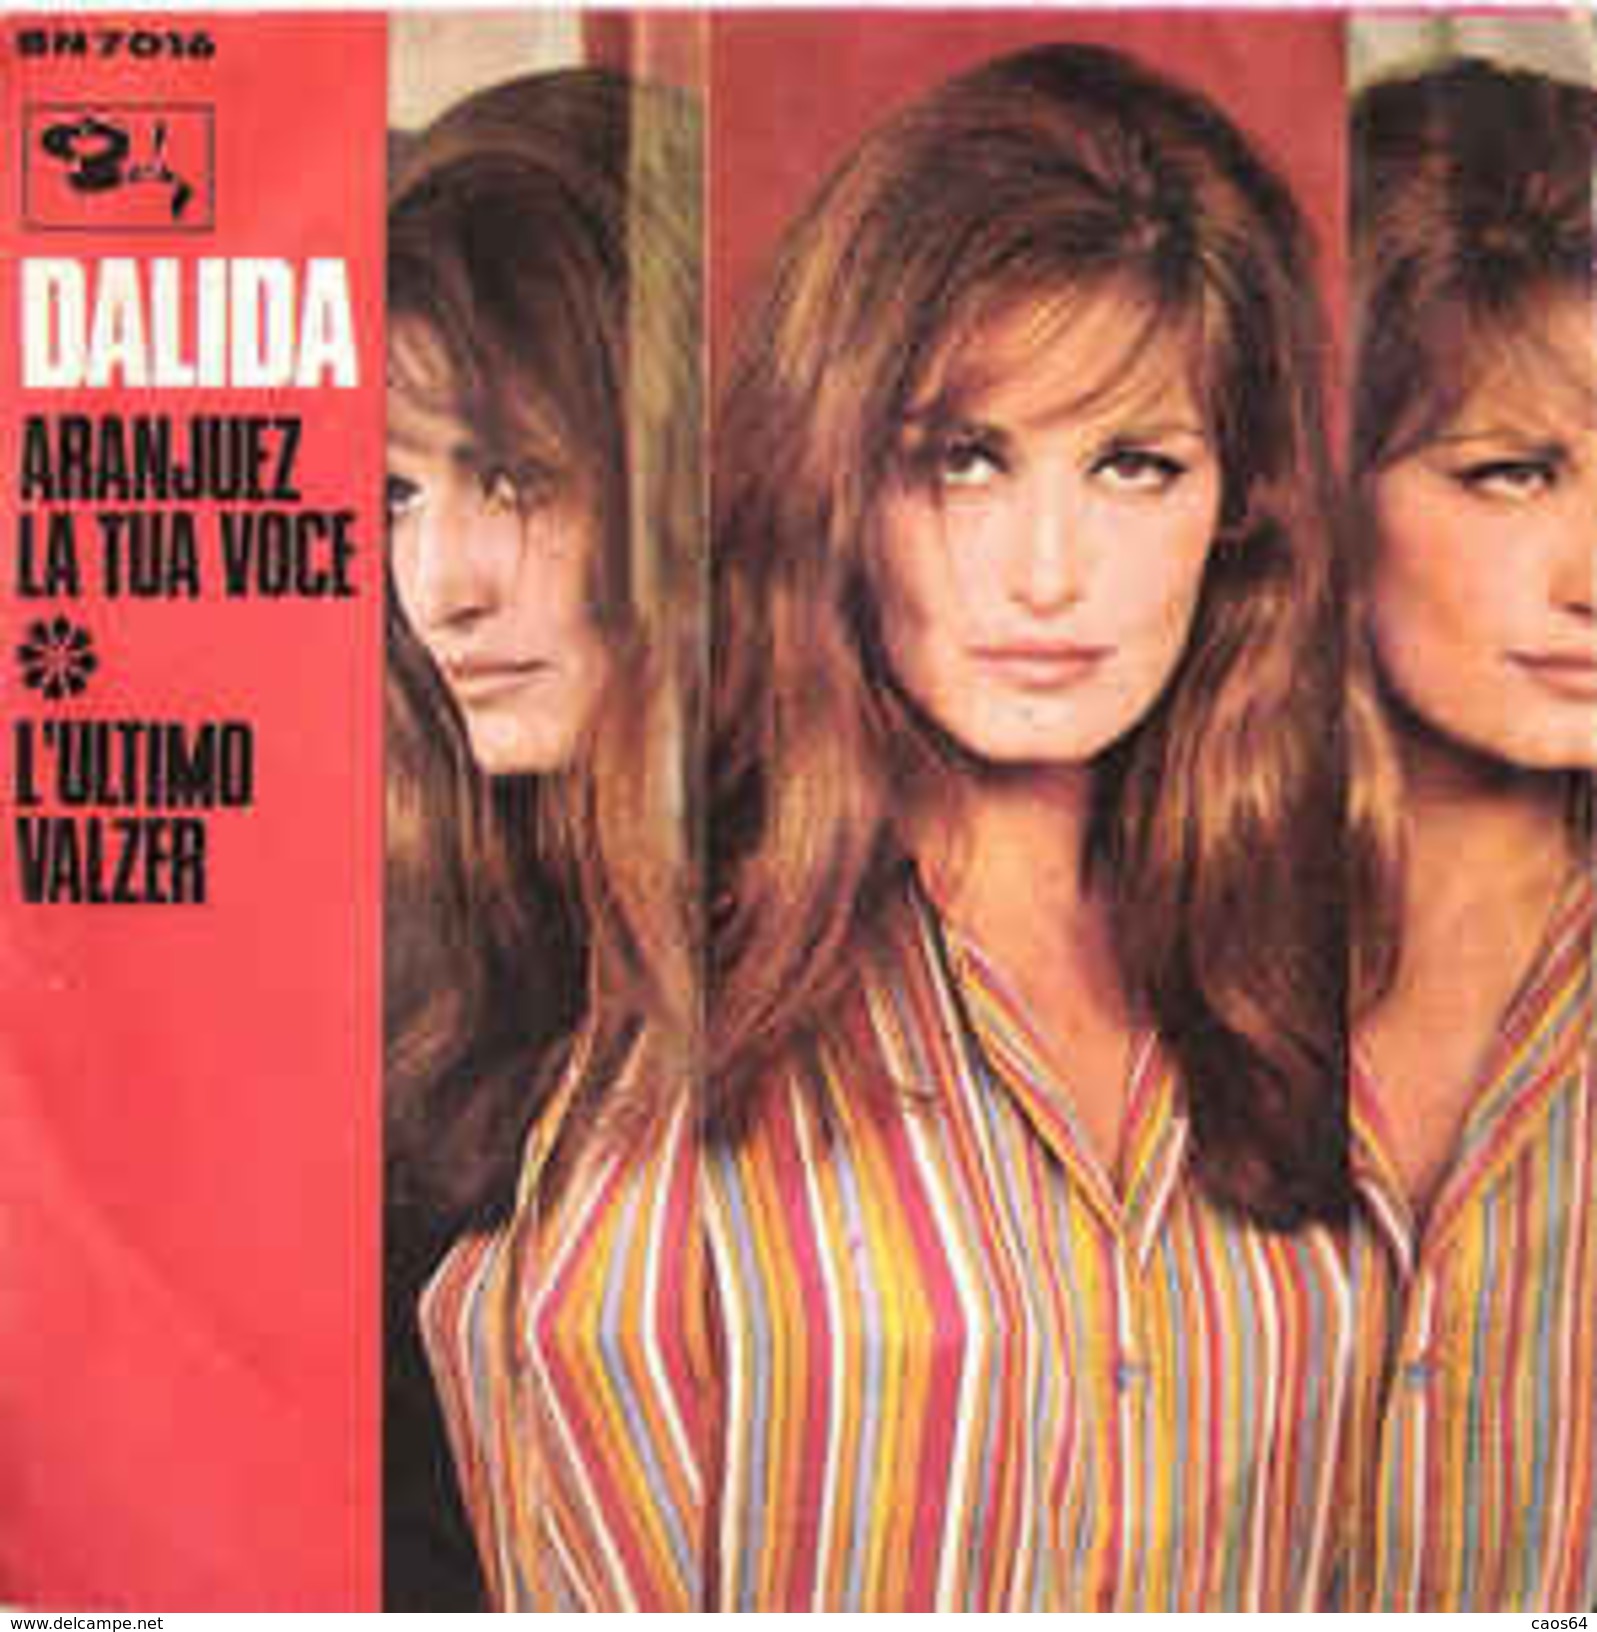 Dalida  Aranjuez La Tua Voce / L'Ultimo Valzer 1967 7" Vg+/vg+ - Other - Italian Music